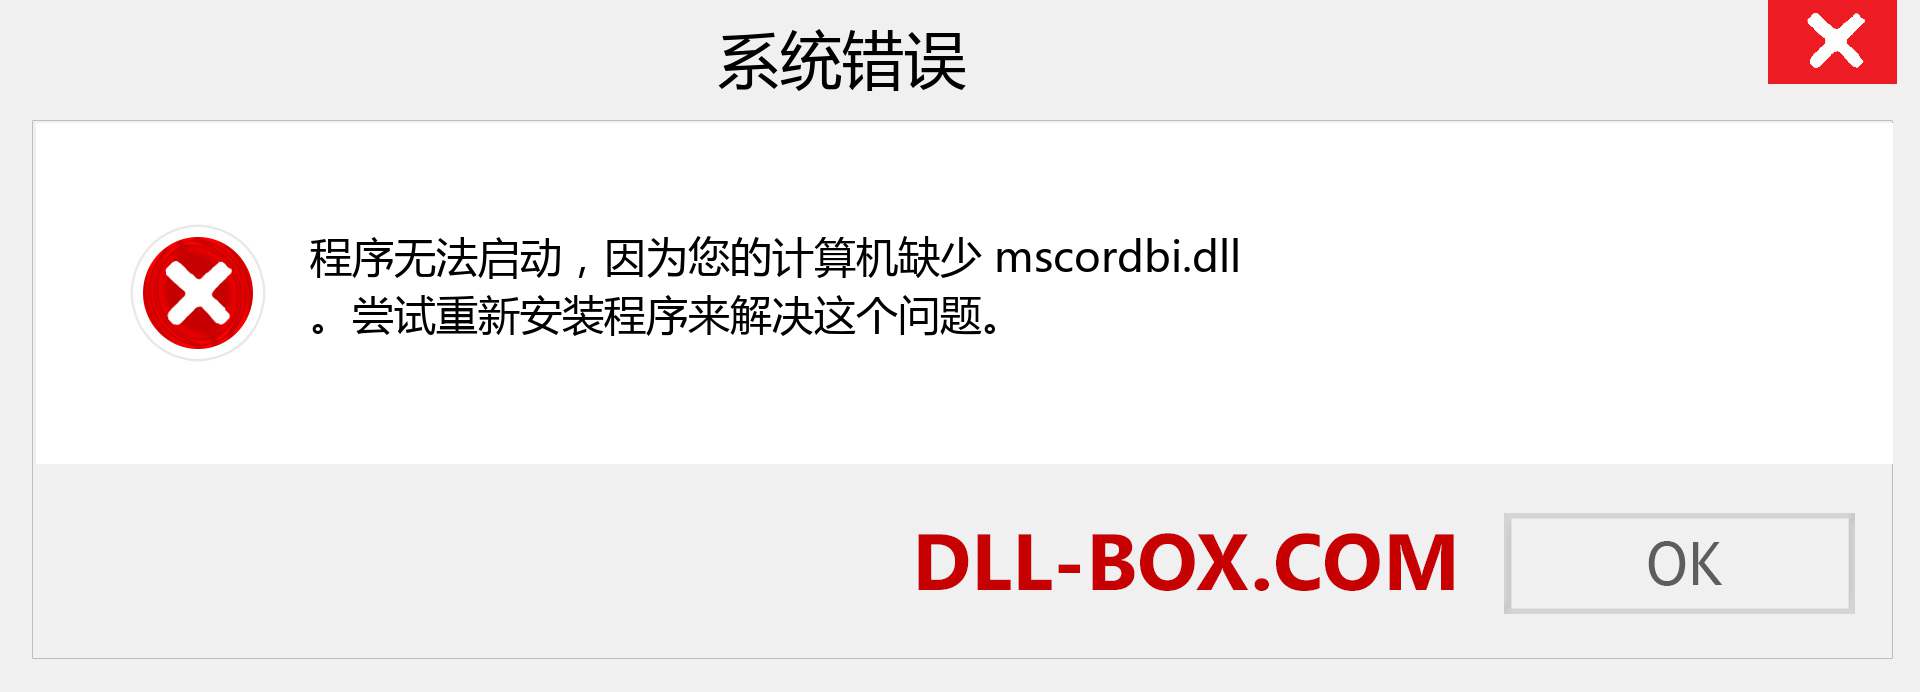 mscordbi.dll 文件丢失？。 适用于 Windows 7、8、10 的下载 - 修复 Windows、照片、图像上的 mscordbi dll 丢失错误